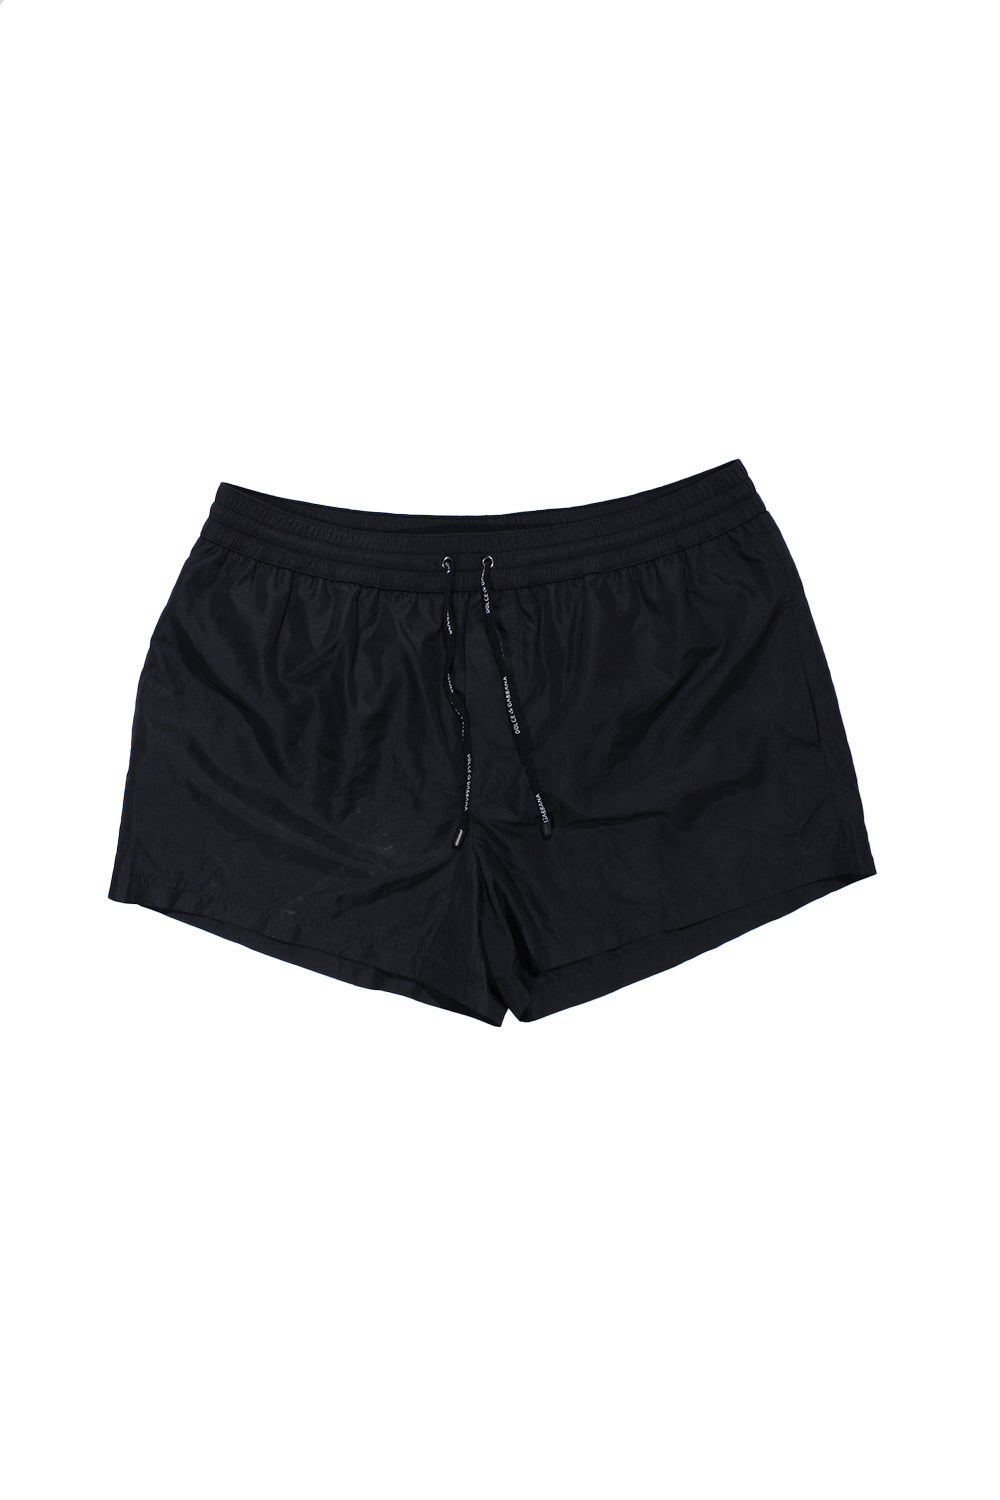 Dolce & Gabbana Swimwear Shorts